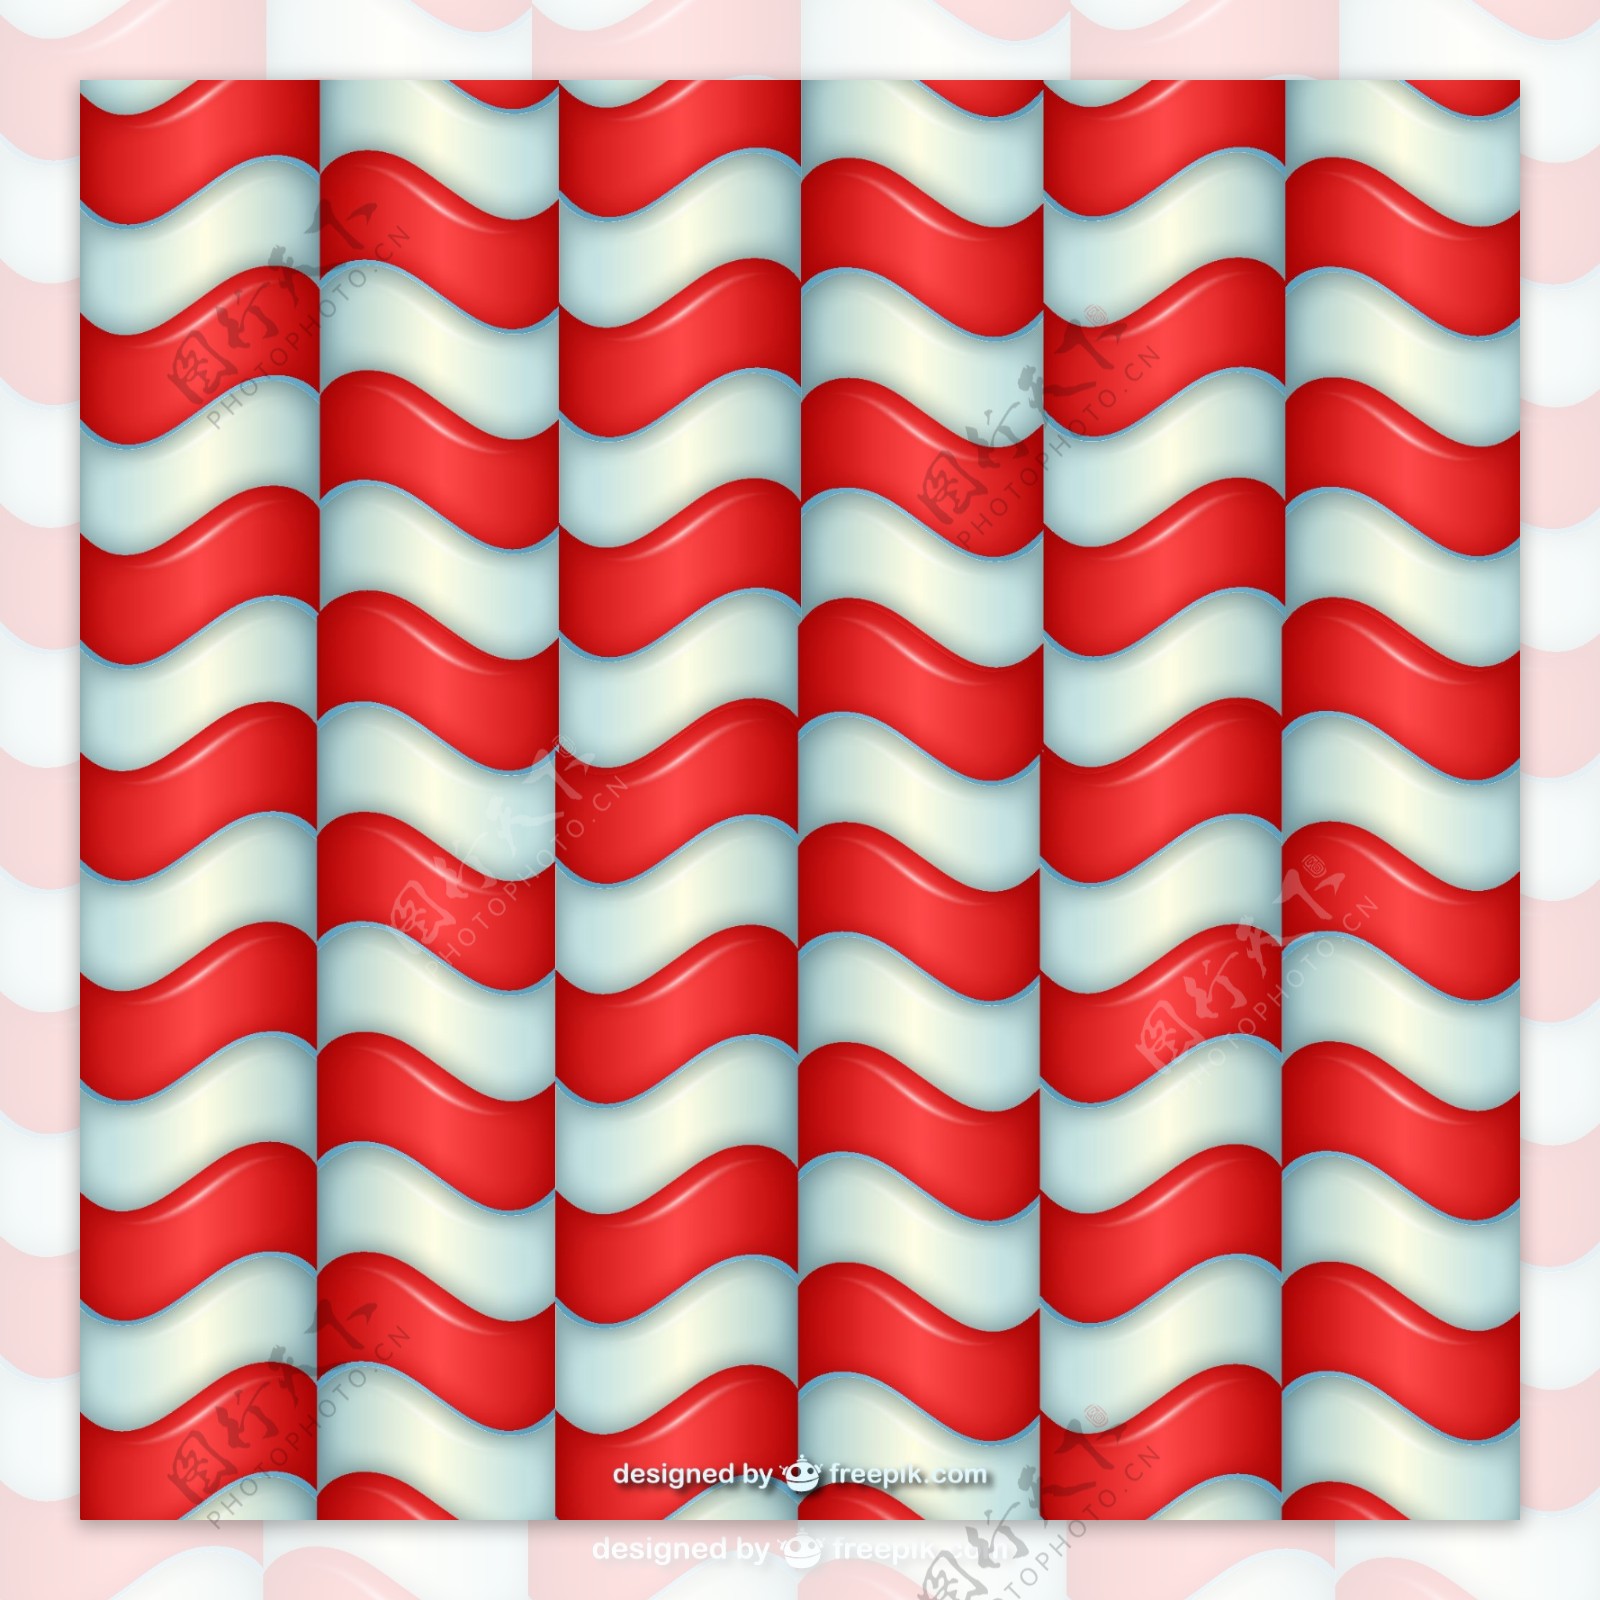 立体红白相间曲线背景矢量素材